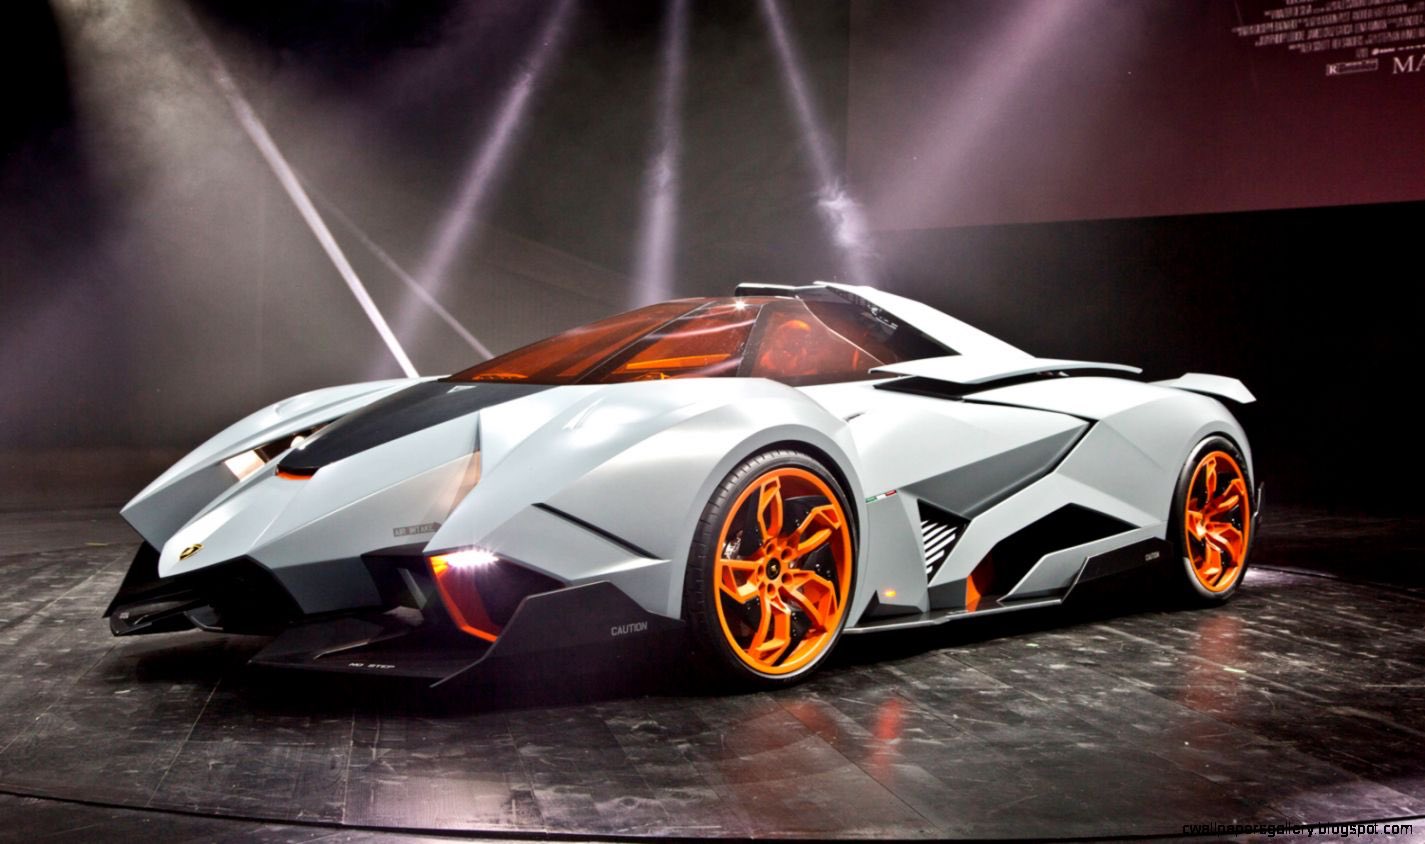 Twitter 上的 Cambrian 一日一名車pro 5 12 Lamborghini Egoista 重量 950kg エンジン 5 2l V10 最高速度 350km H 馬力 592hp ランボルギーニ創立50周年を祝し造られたコンセプトカー 車 名はイタリア語で 利己主義者 の意 戦闘機がモチーフであり